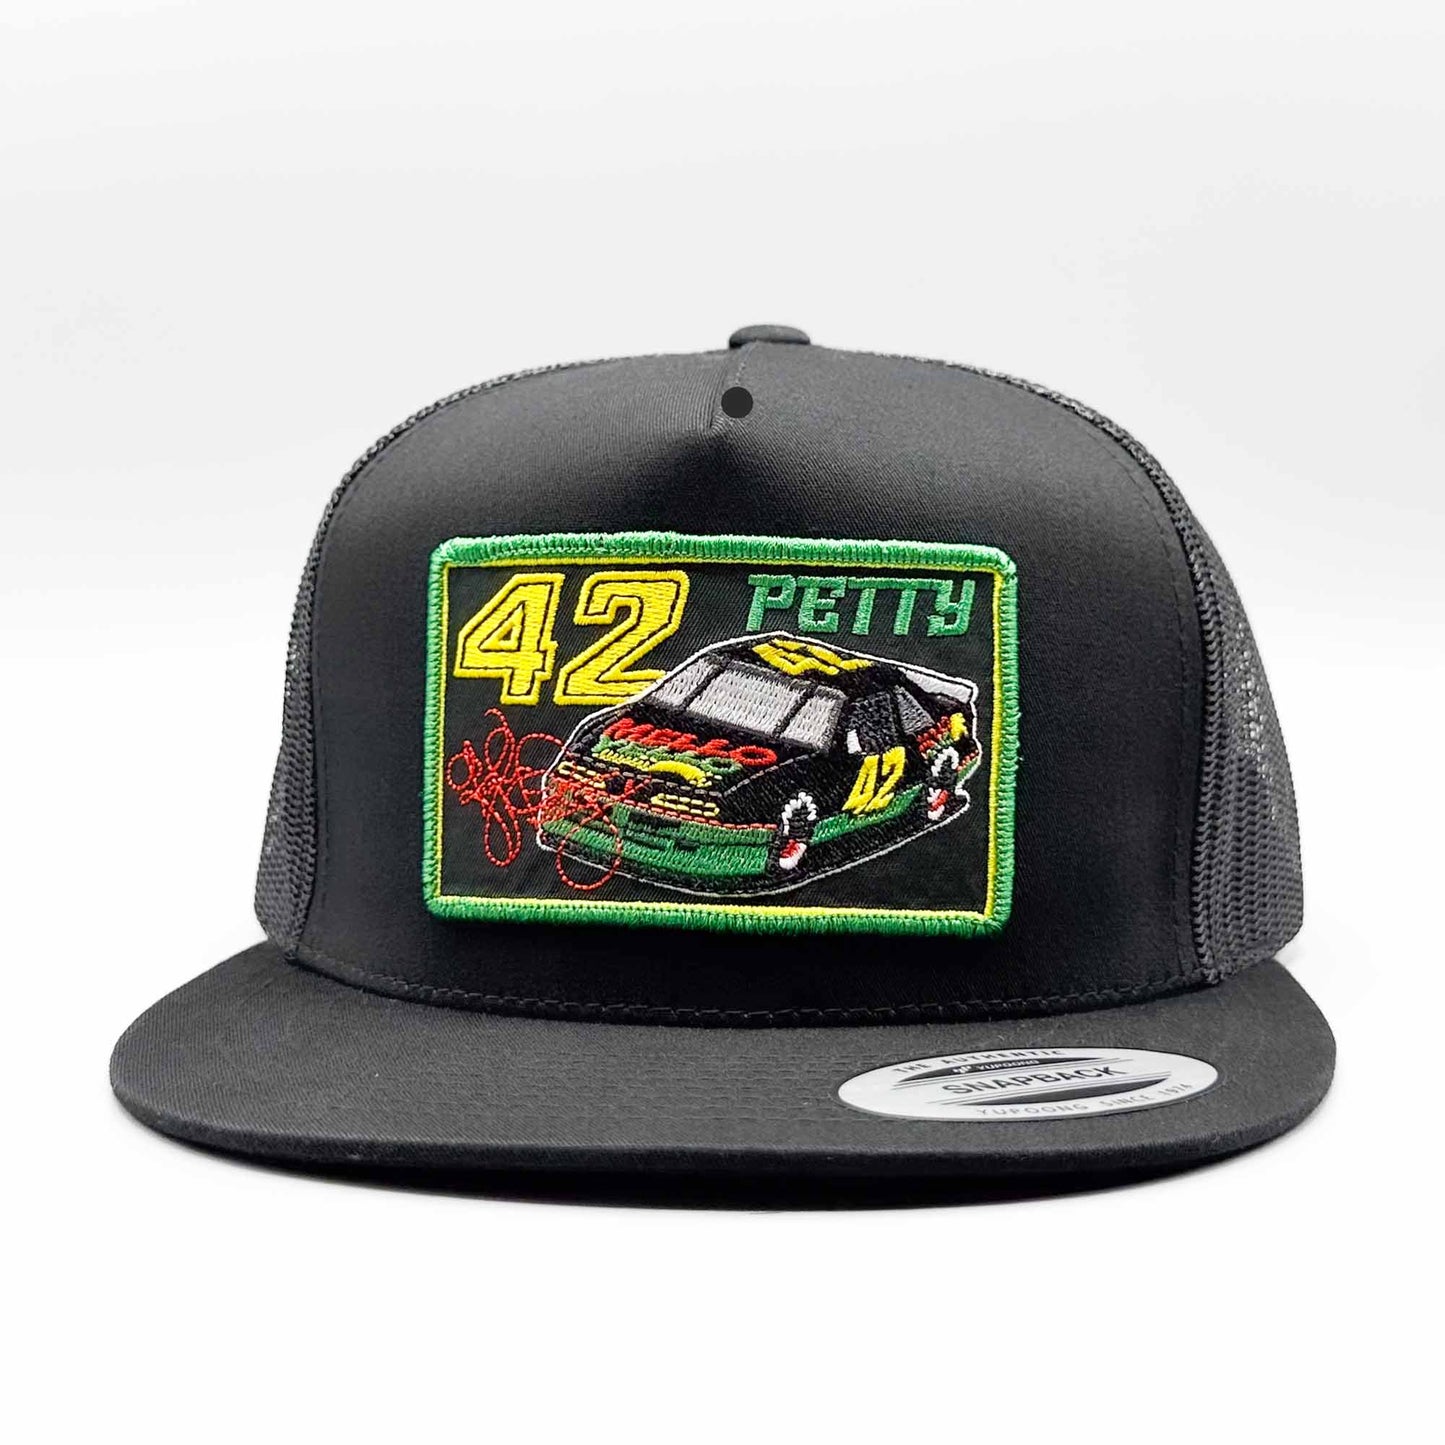 Kyle Petty Mello Yello Trucker Hat